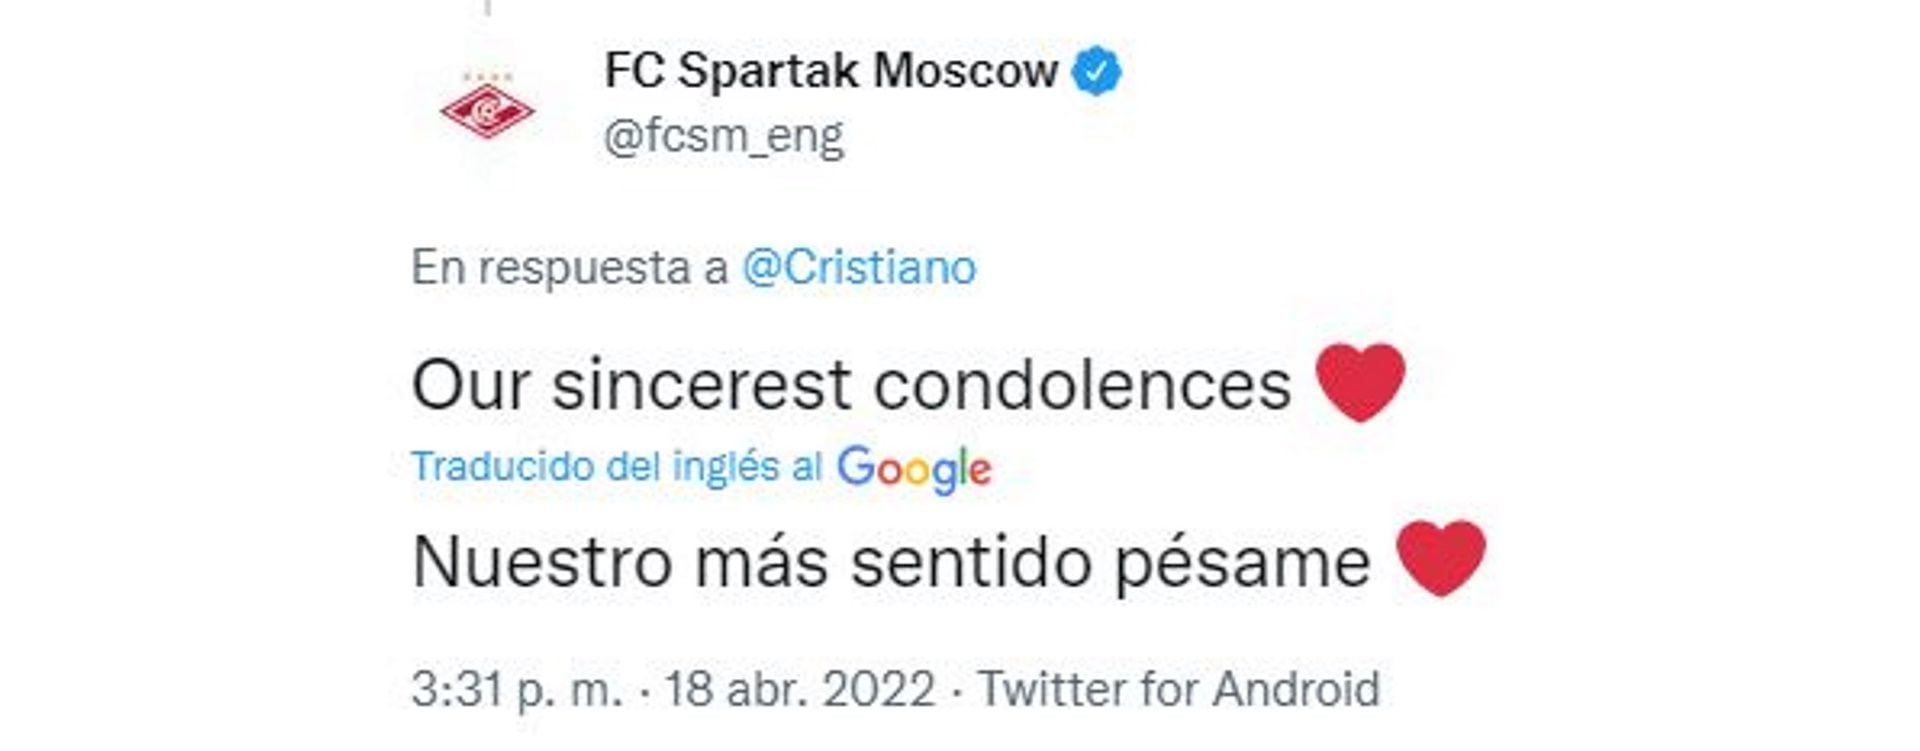 El mensaje del Spartak de Moscú